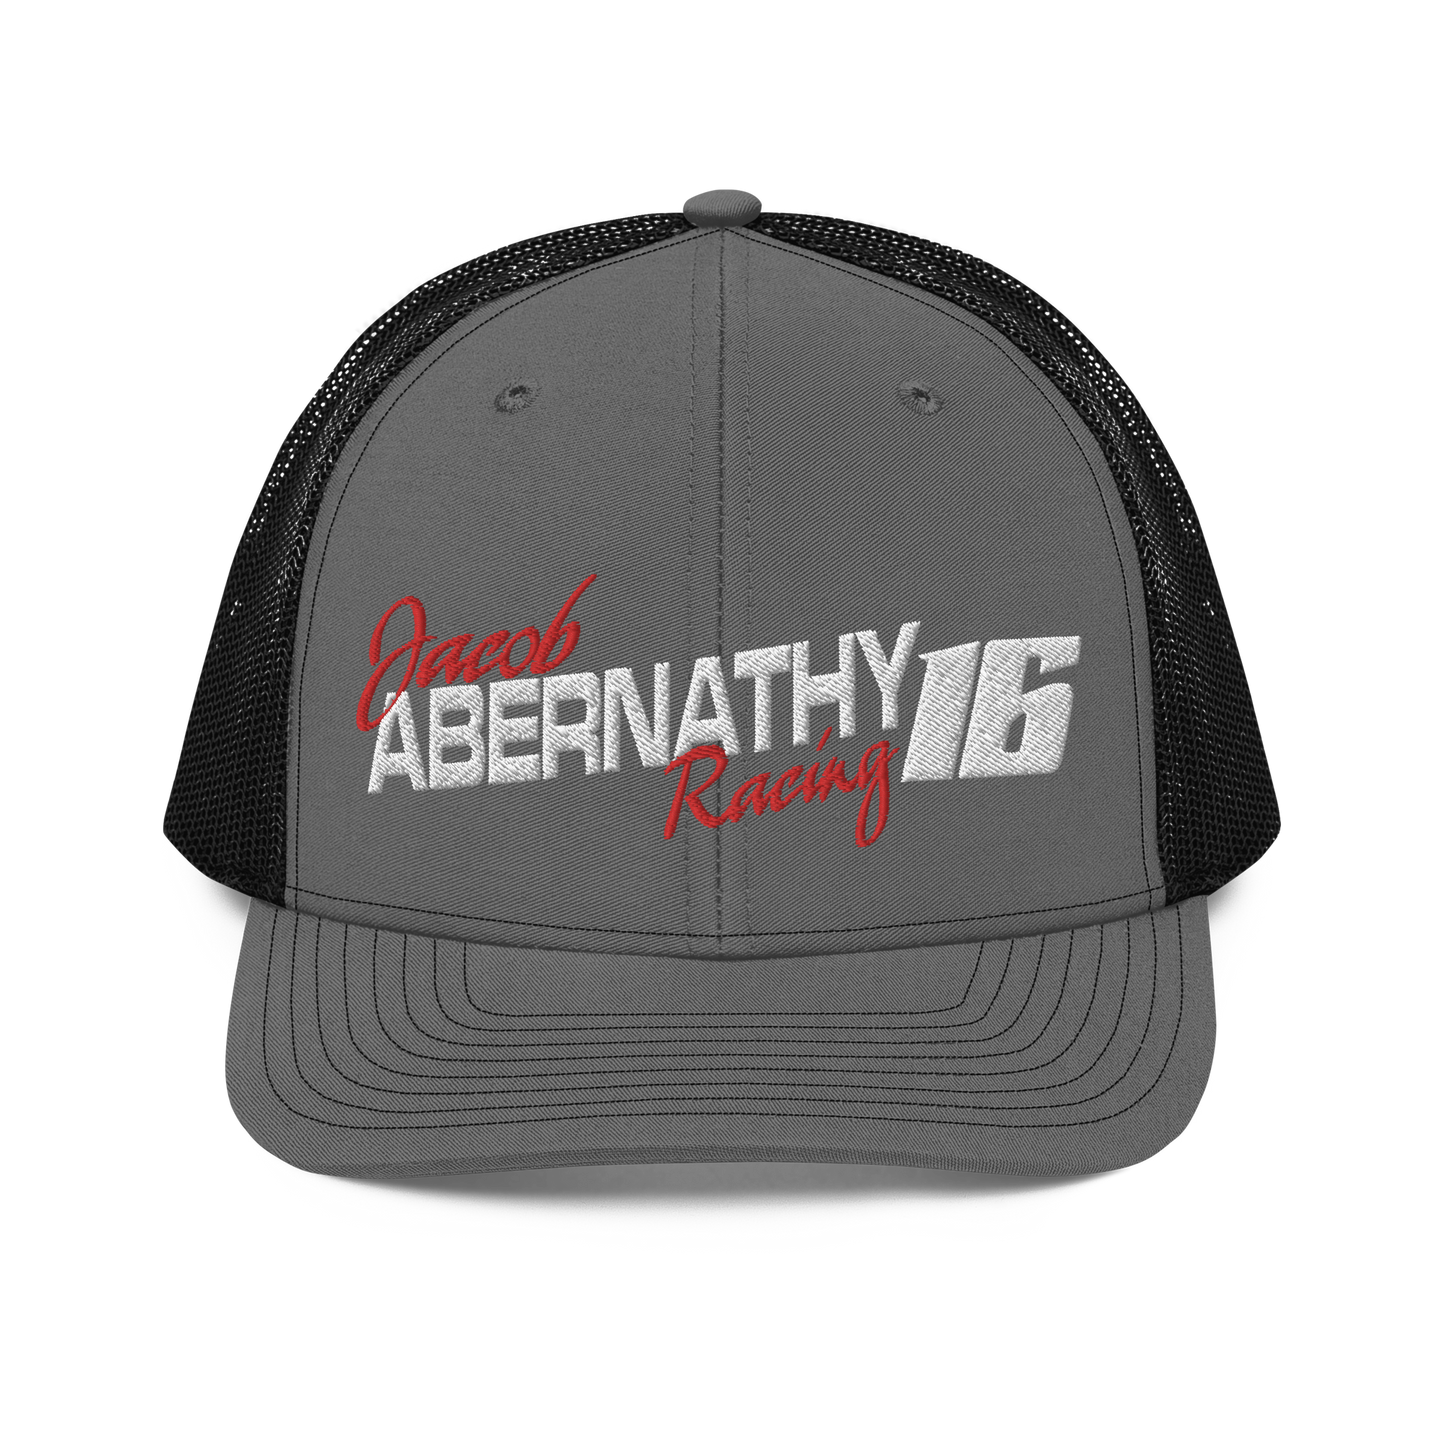 Jacob Abernathy Racing Hat